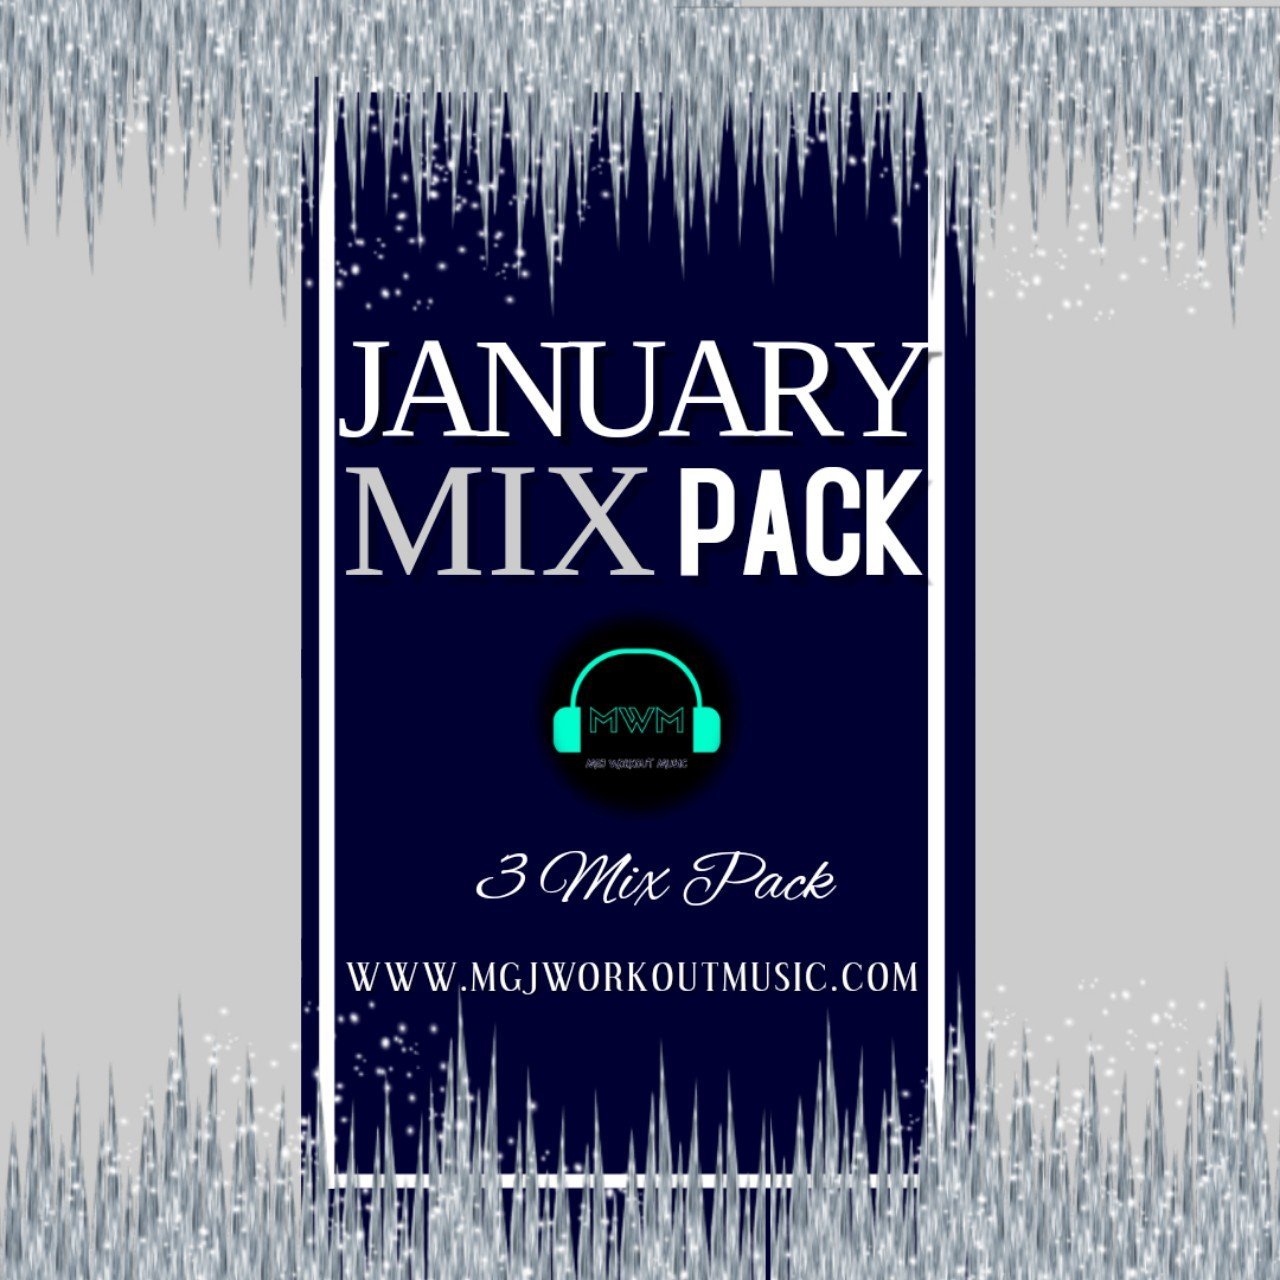 MGJ Workout Music - January Mix Pack 2019